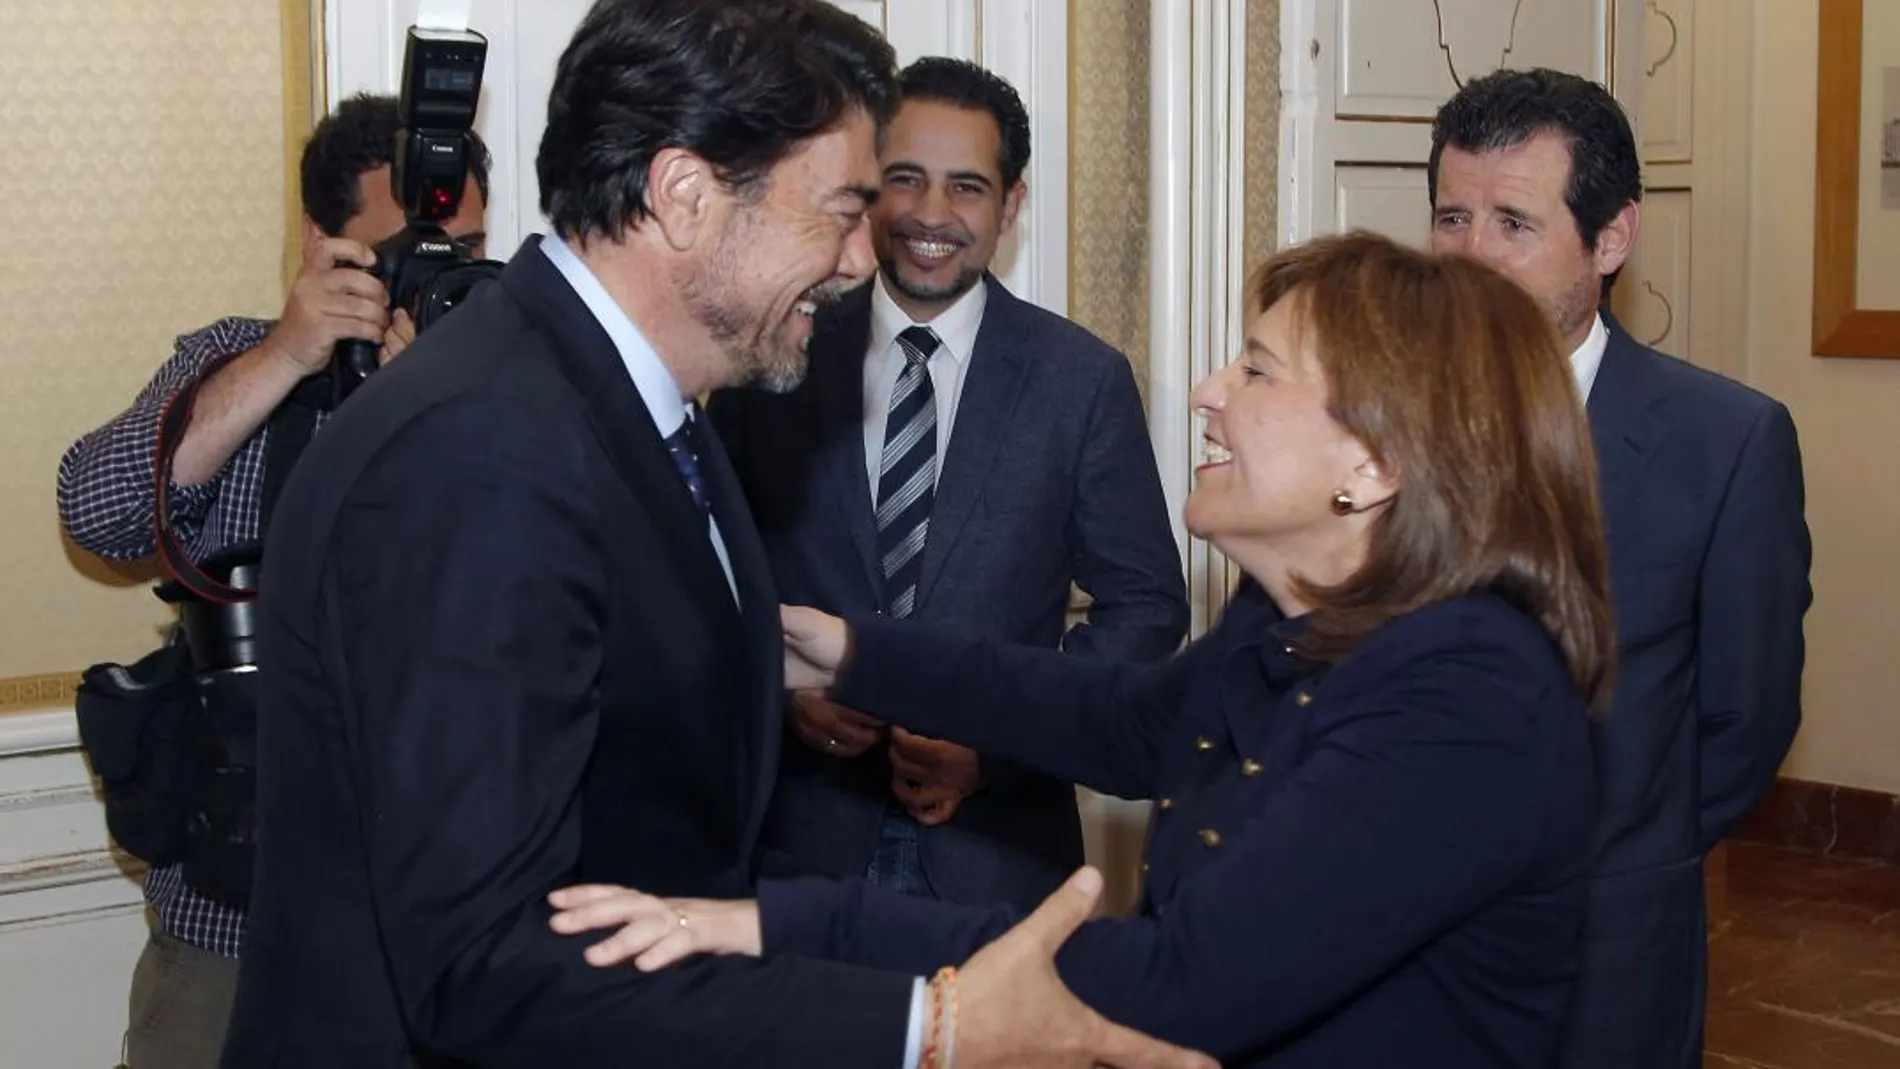 La presidenta del PP, Isabel Bonig, se reunió ayer en Alicante con el nuevo alcalde, Luis Barcala. Al encuentro, acudió la plana mayor del PPCV. El presidente del PP de Alicante, José Císcar no faltó a la cita. Todo fueron felicitaciones y abrazos